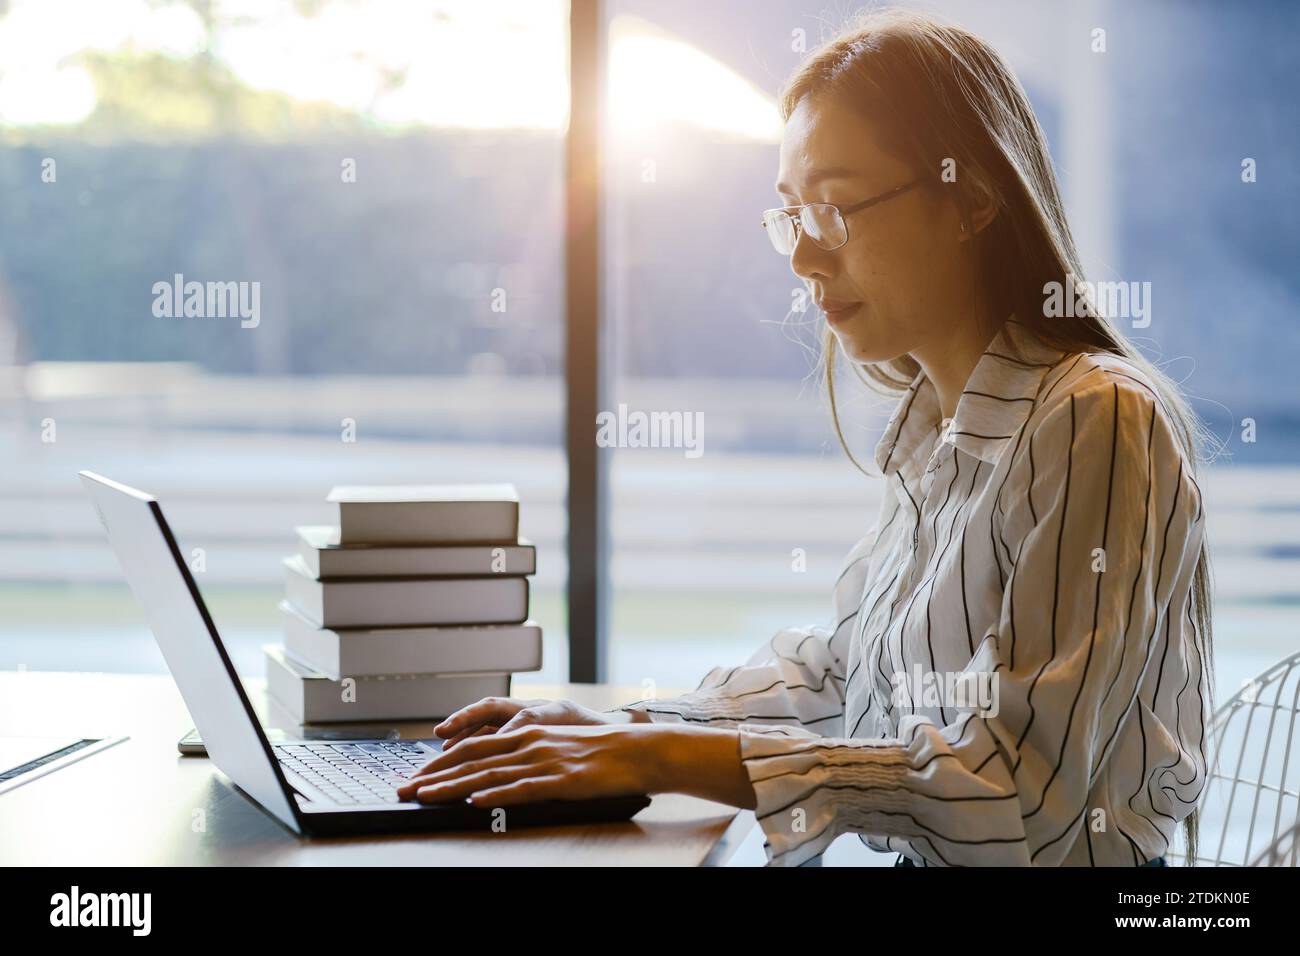 Asiatische chinesische Erwachsene Geschäftsfrau sitzend arbeitend studieren Business Theory Forschung in gemütlichem Raum mit drahtlosem Laptop Computer Stockfoto